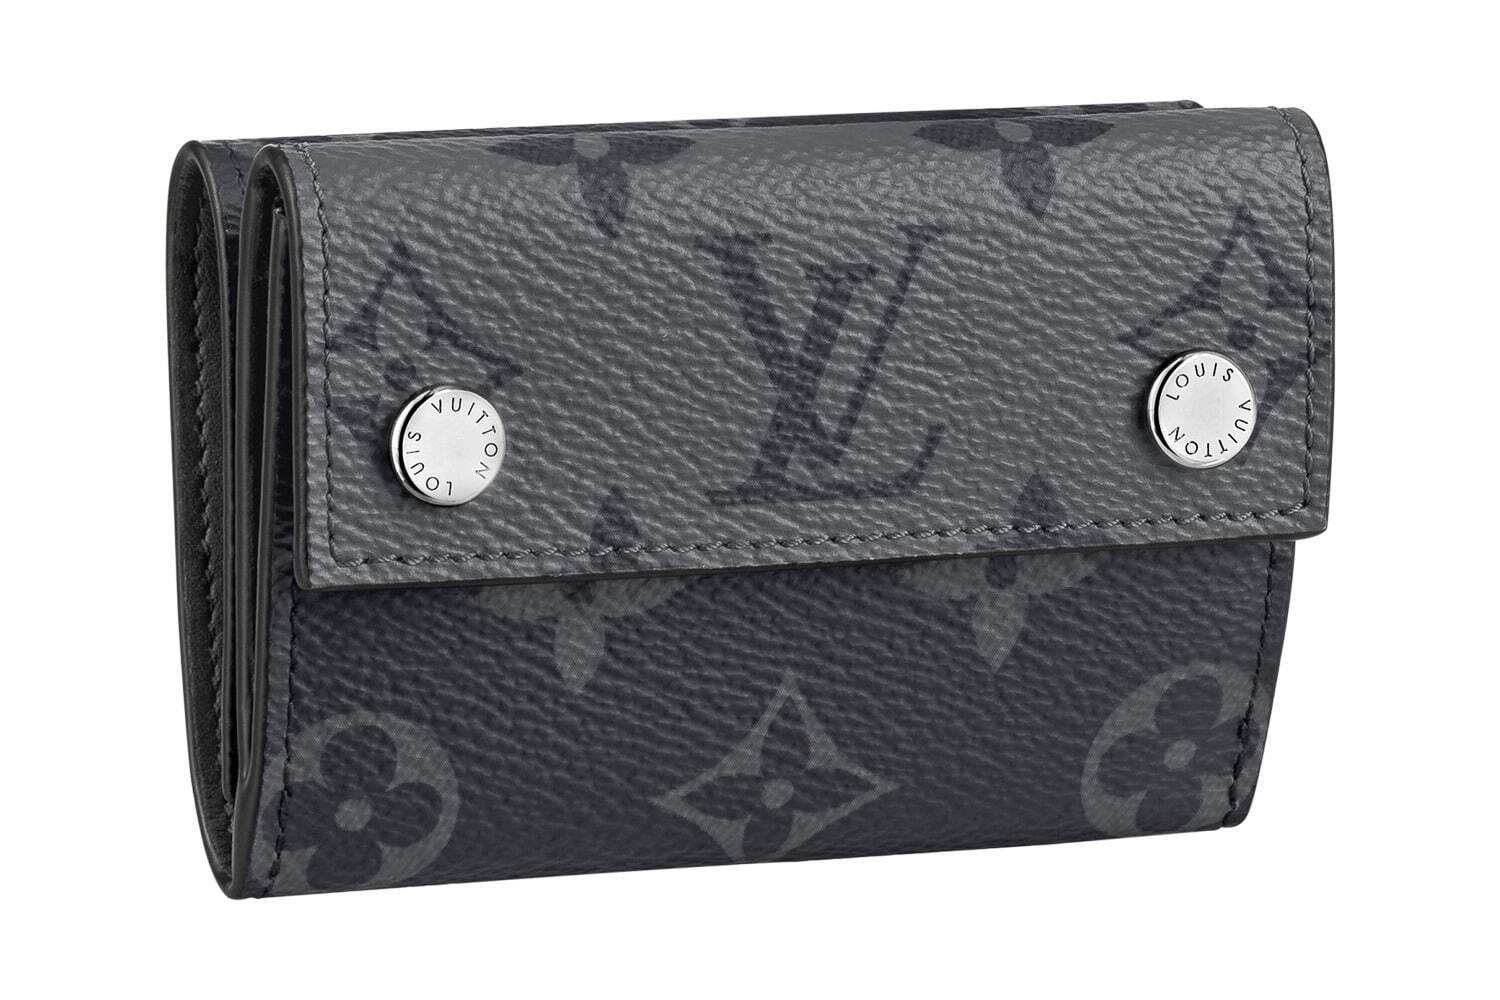 〈ルイ・ヴィトン〉グレイッシュなキャンバスレザーのミニ財布